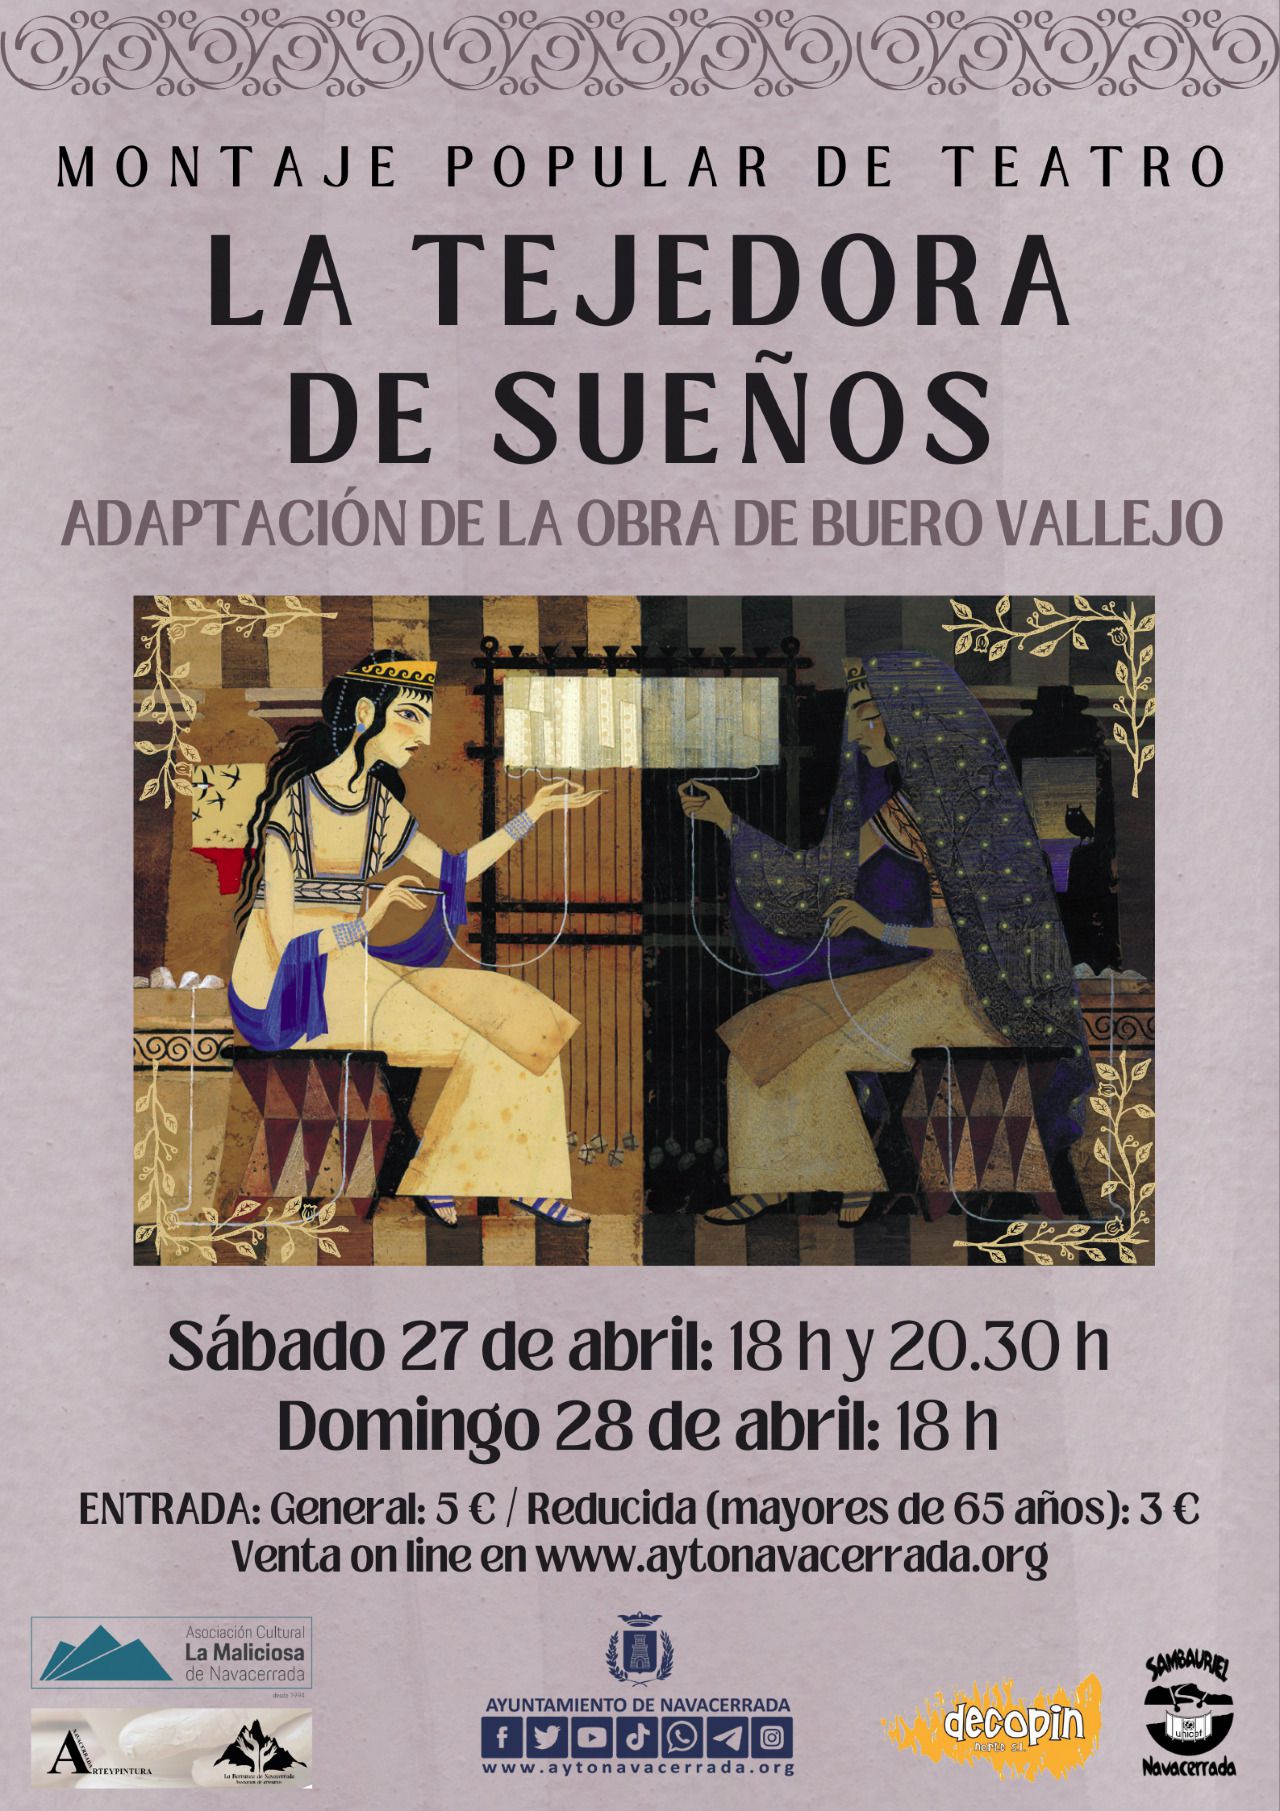 Montaje popular de teatro con una versión de 'La tejedora de sueños', de Buero Vallejo